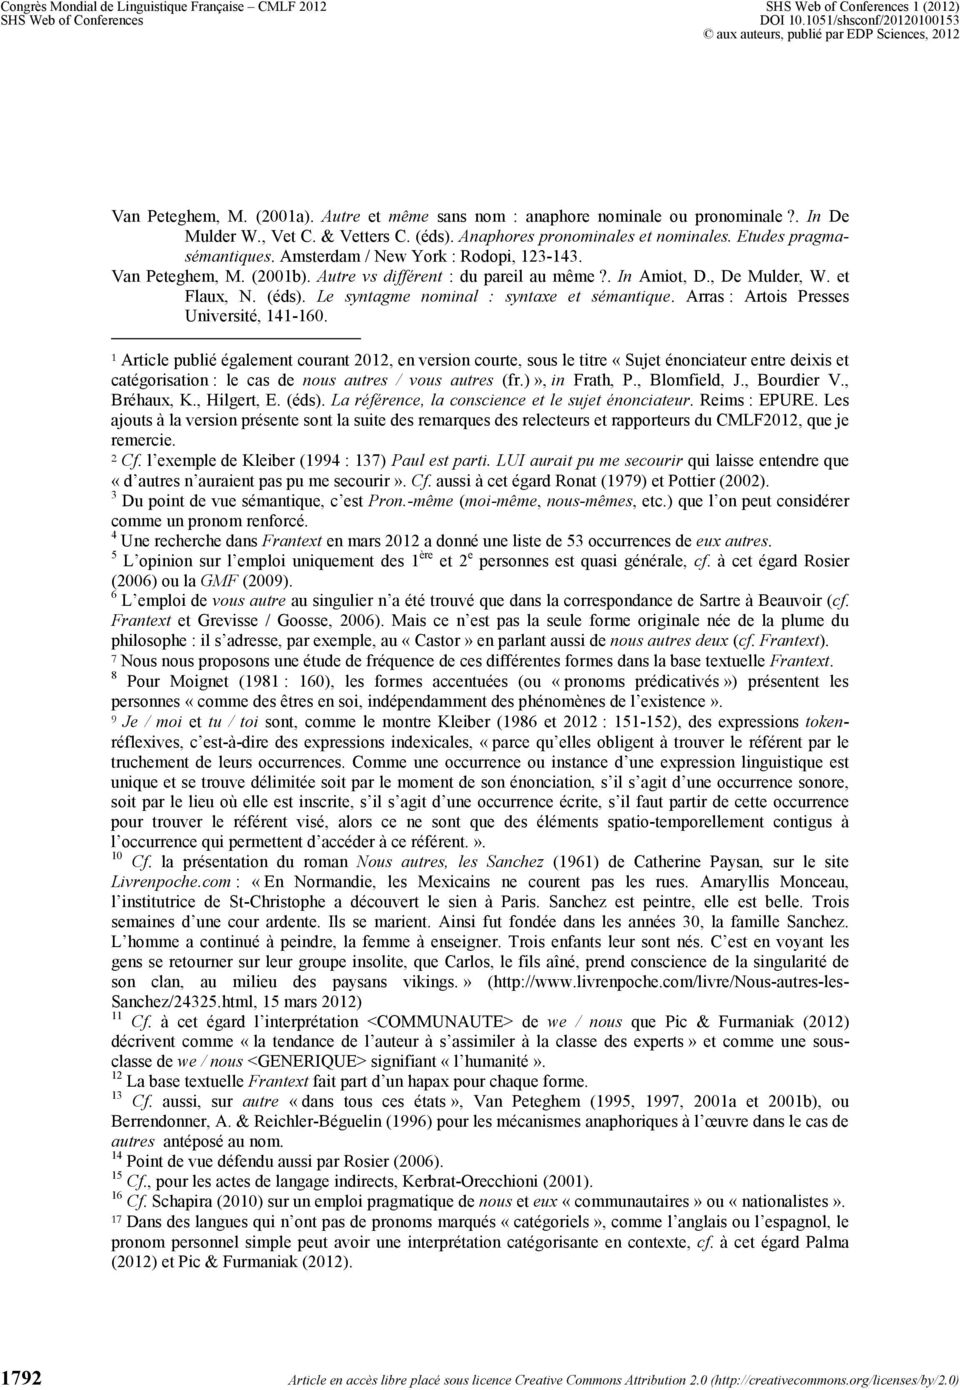 et Flaux, N. (éds). Le syntagme nominal : syntaxe et sémantique. Arras : Artois Presses Université, 141-160.